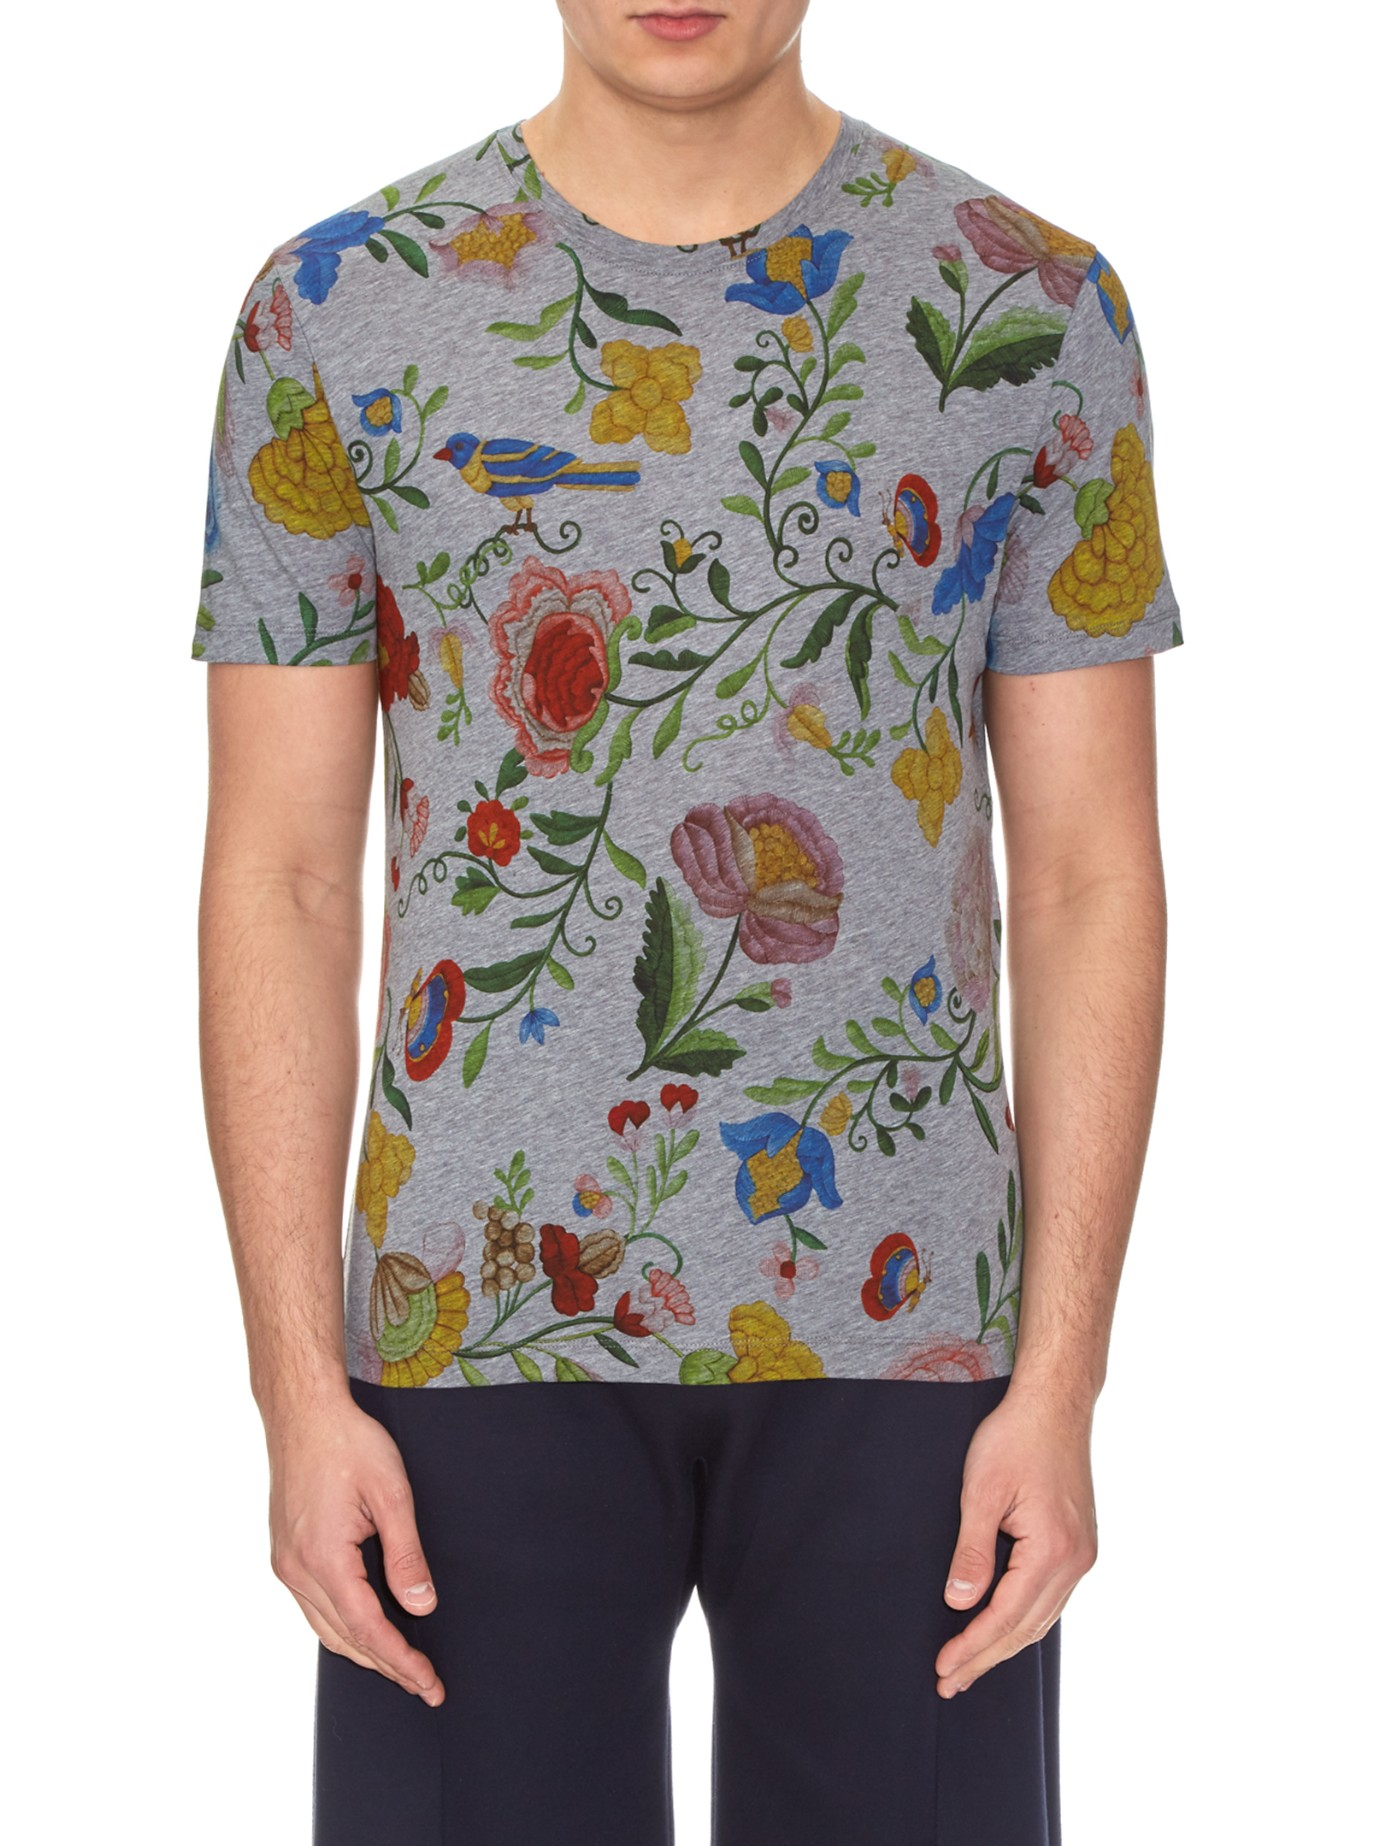 Gucci Floral-print Cotton T-shirt for Men - Lyst